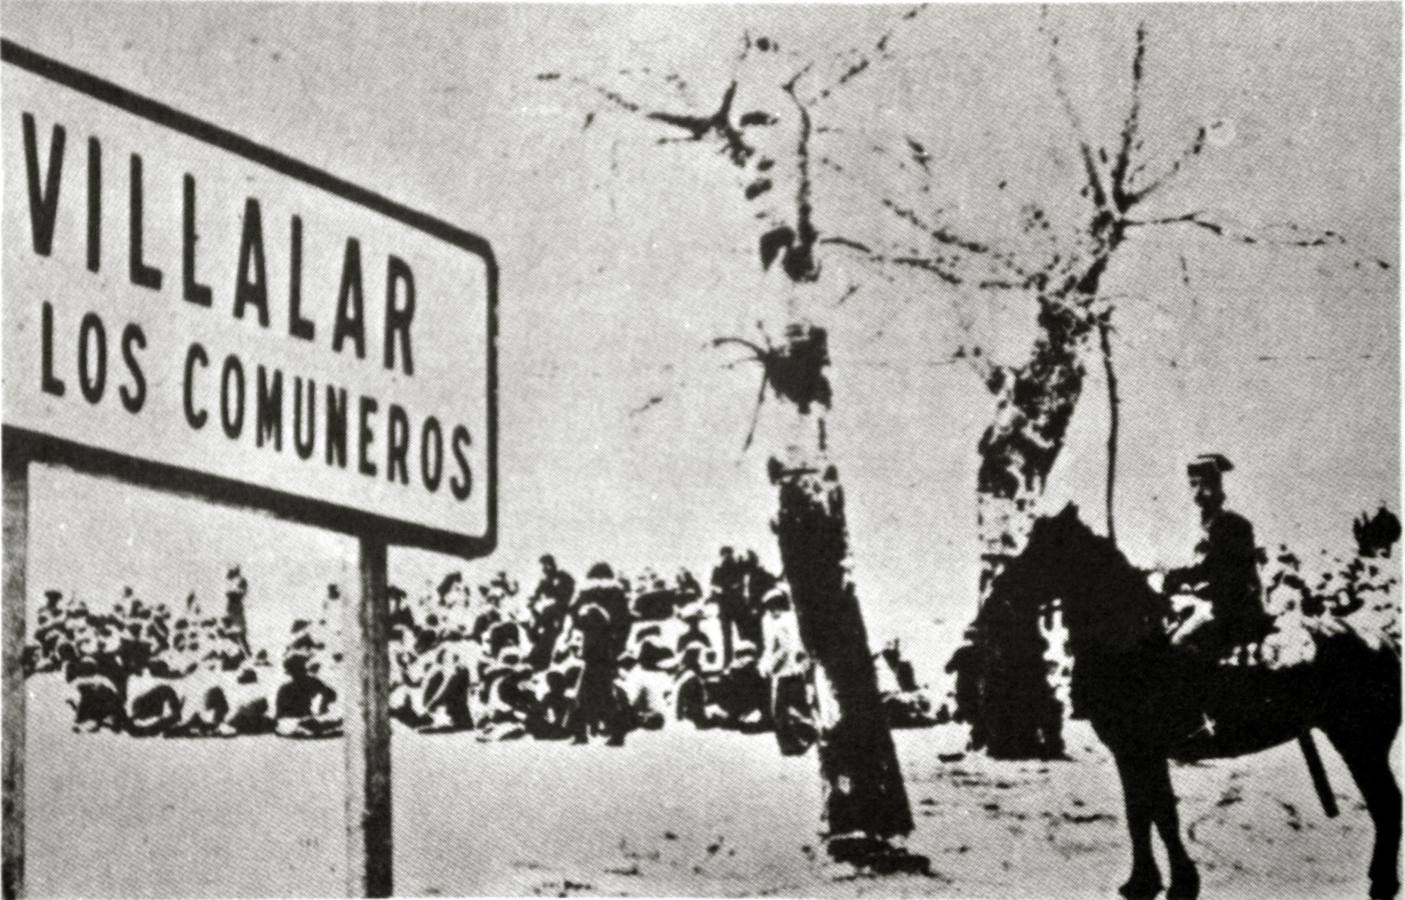 El día de Villalar del 25 de abril de 1976 congregó a cerca de 400 personas, que fueron disueltas por la Guardia Civil.